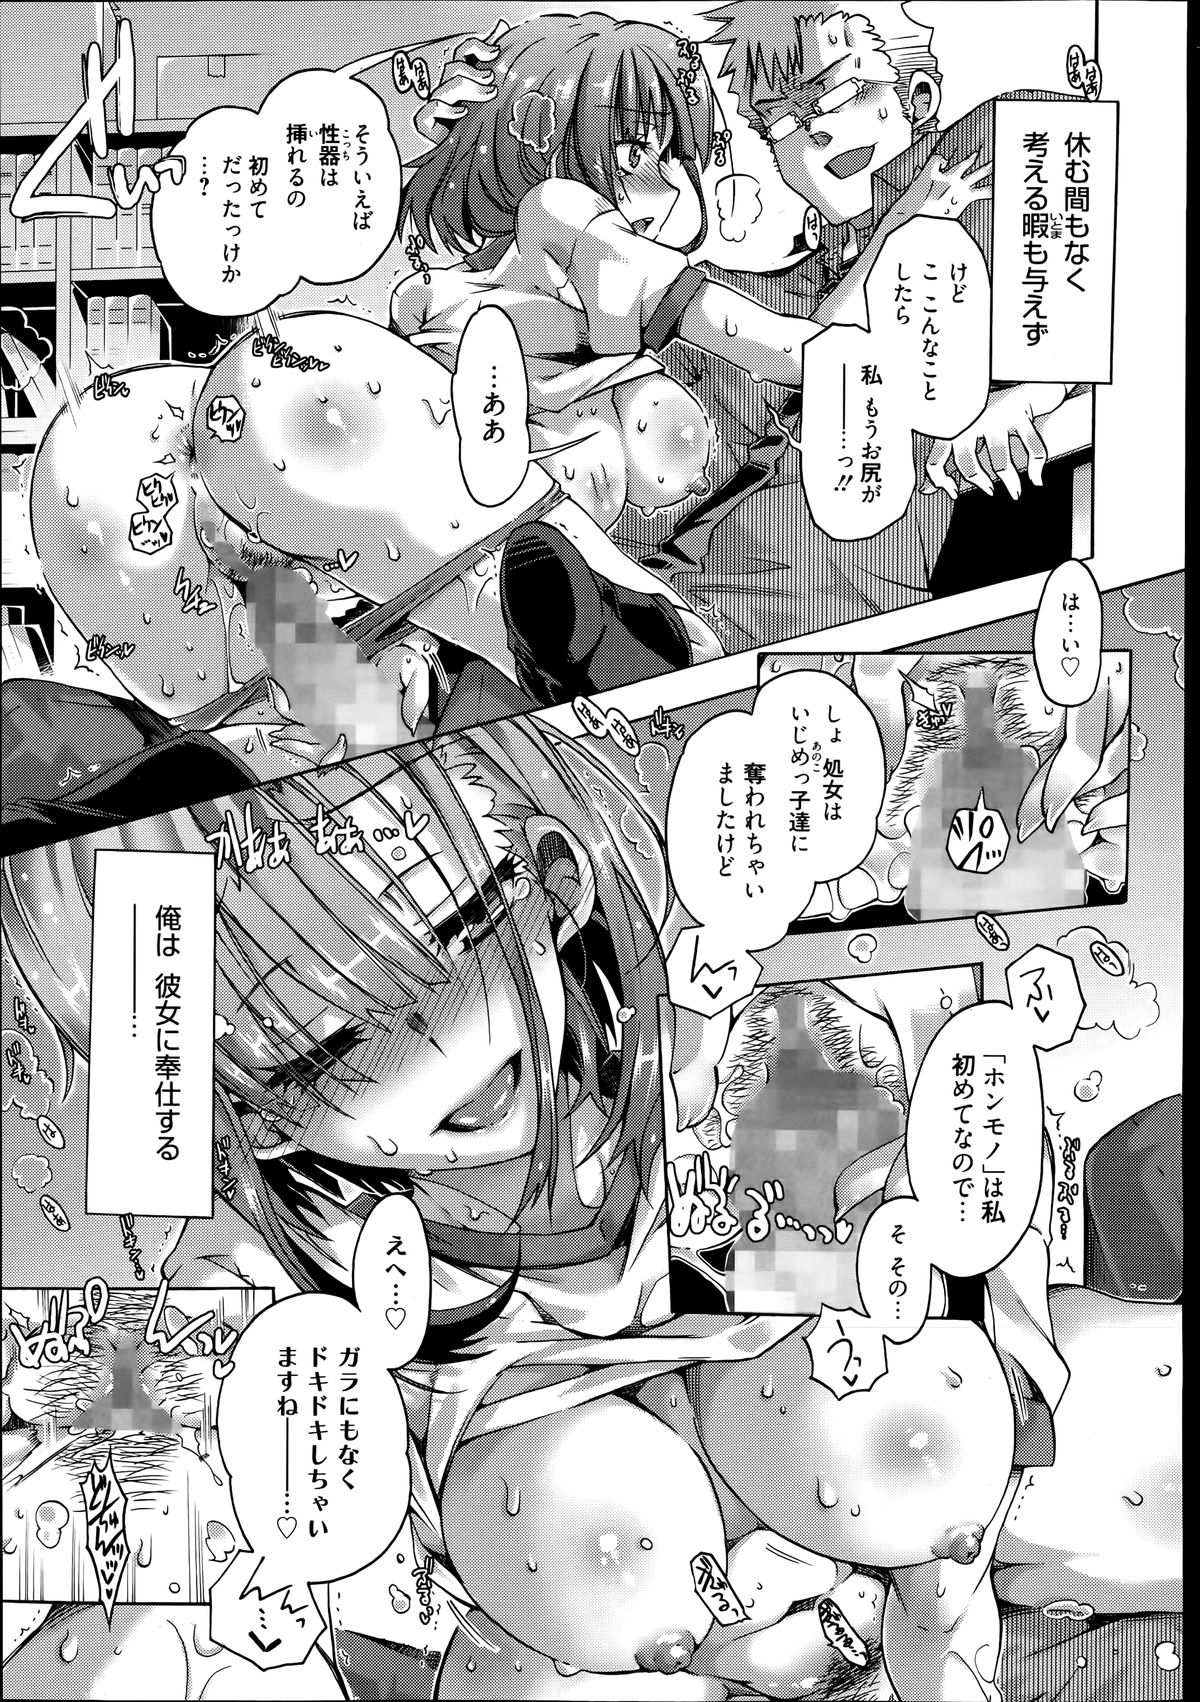 Manga Bangaichi 2014-07 page 33 full